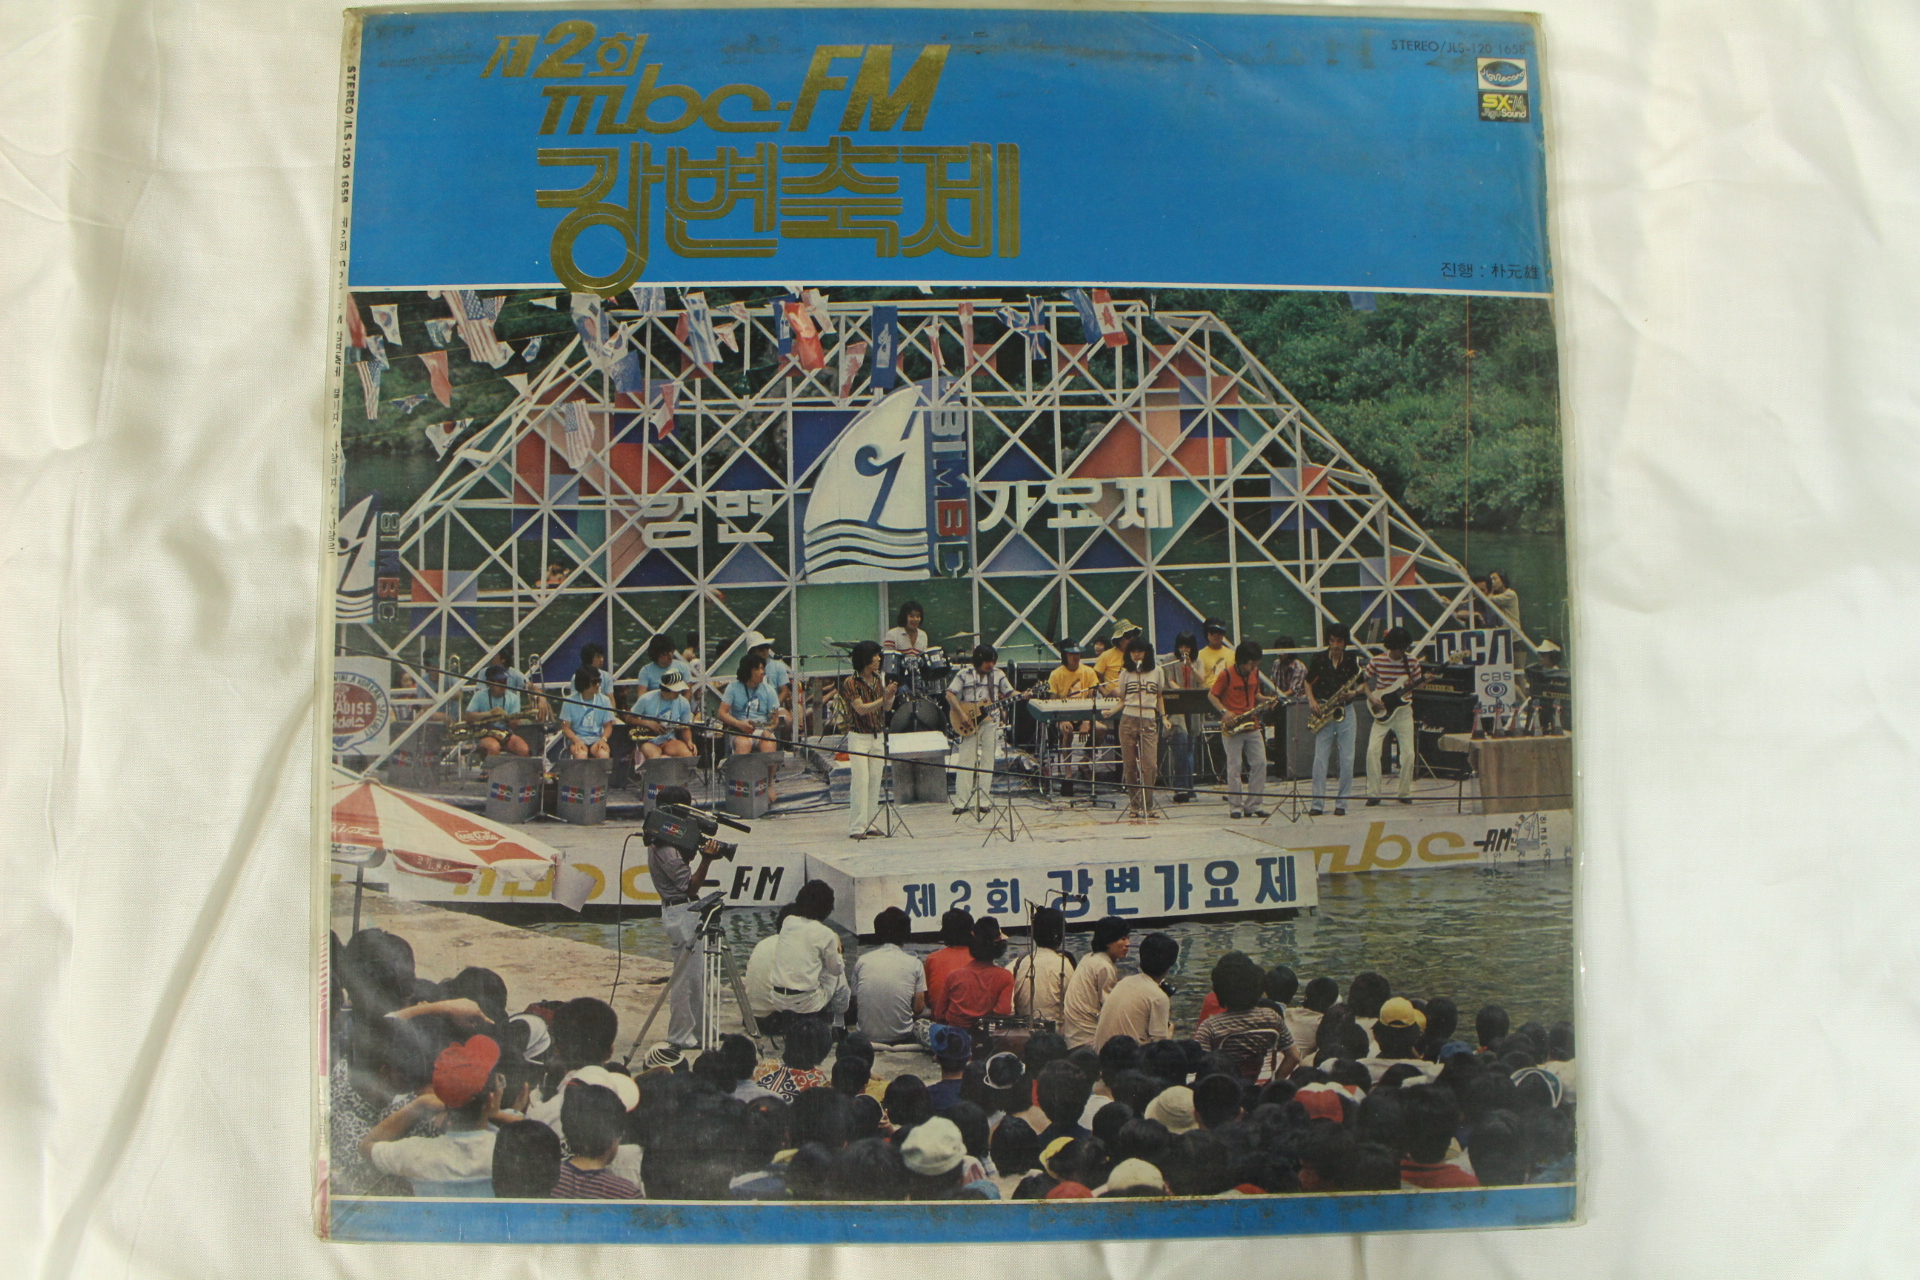 438-1981년 MBG 강변가요제 제2회 강변축제